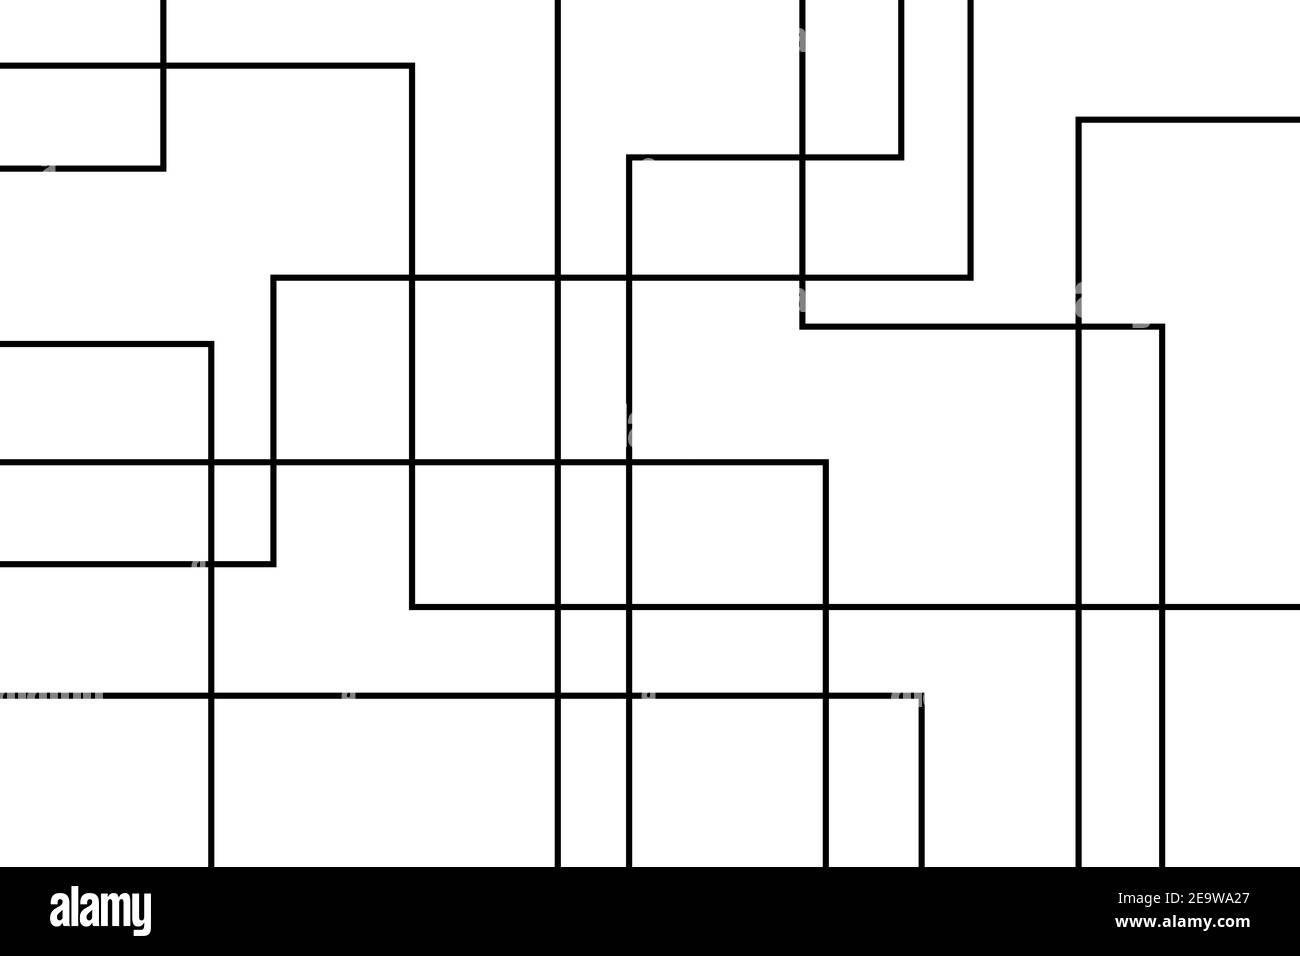 Schema di sfondo astratto realizzato con linee che formano forme geometriche in movimento / astrazione del movimento. vecto moderno, semplice, minimo e architettonico Foto Stock